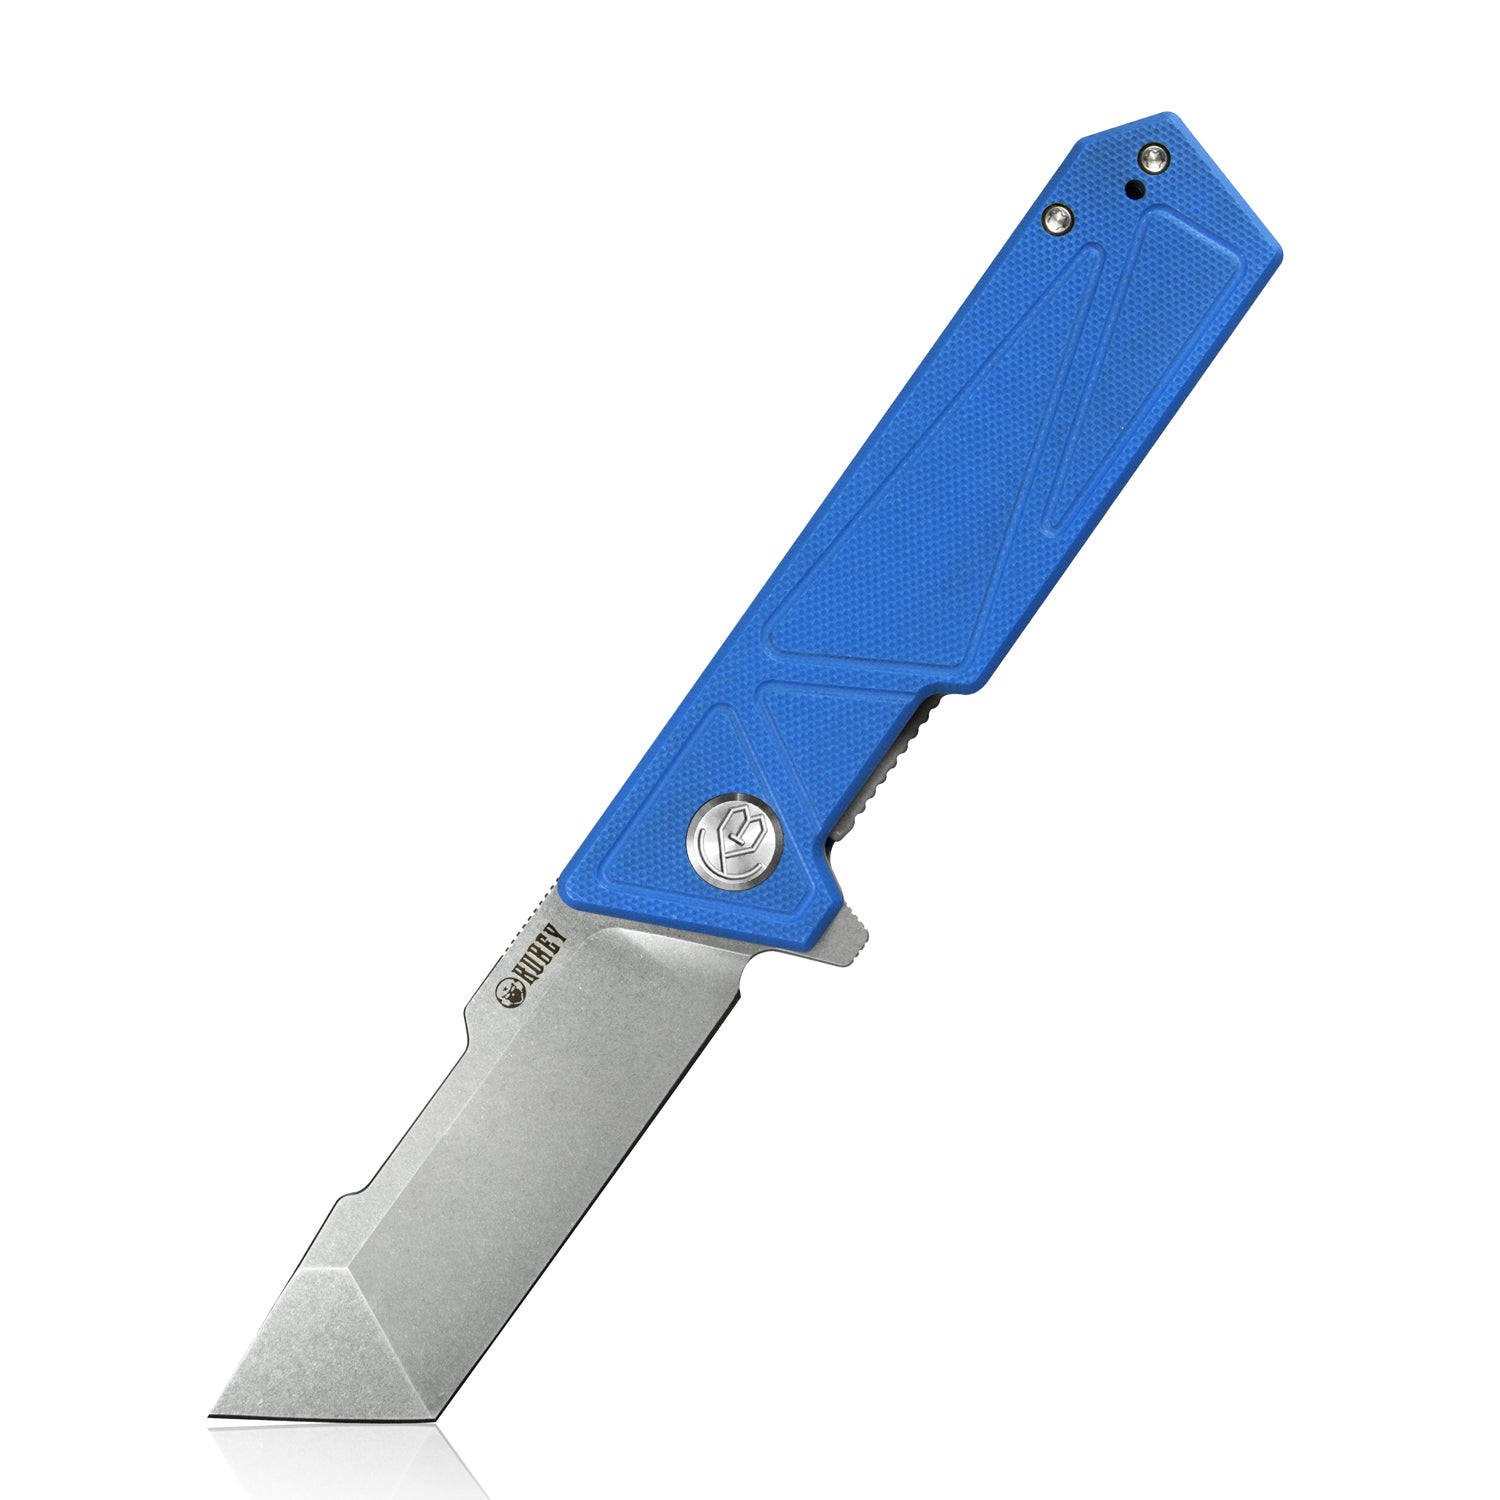 Kubey Avenger Outdoor Edc Folding Pocket Knife Blue G10 Handle 3.07" Bead Blasted D2 KU104C